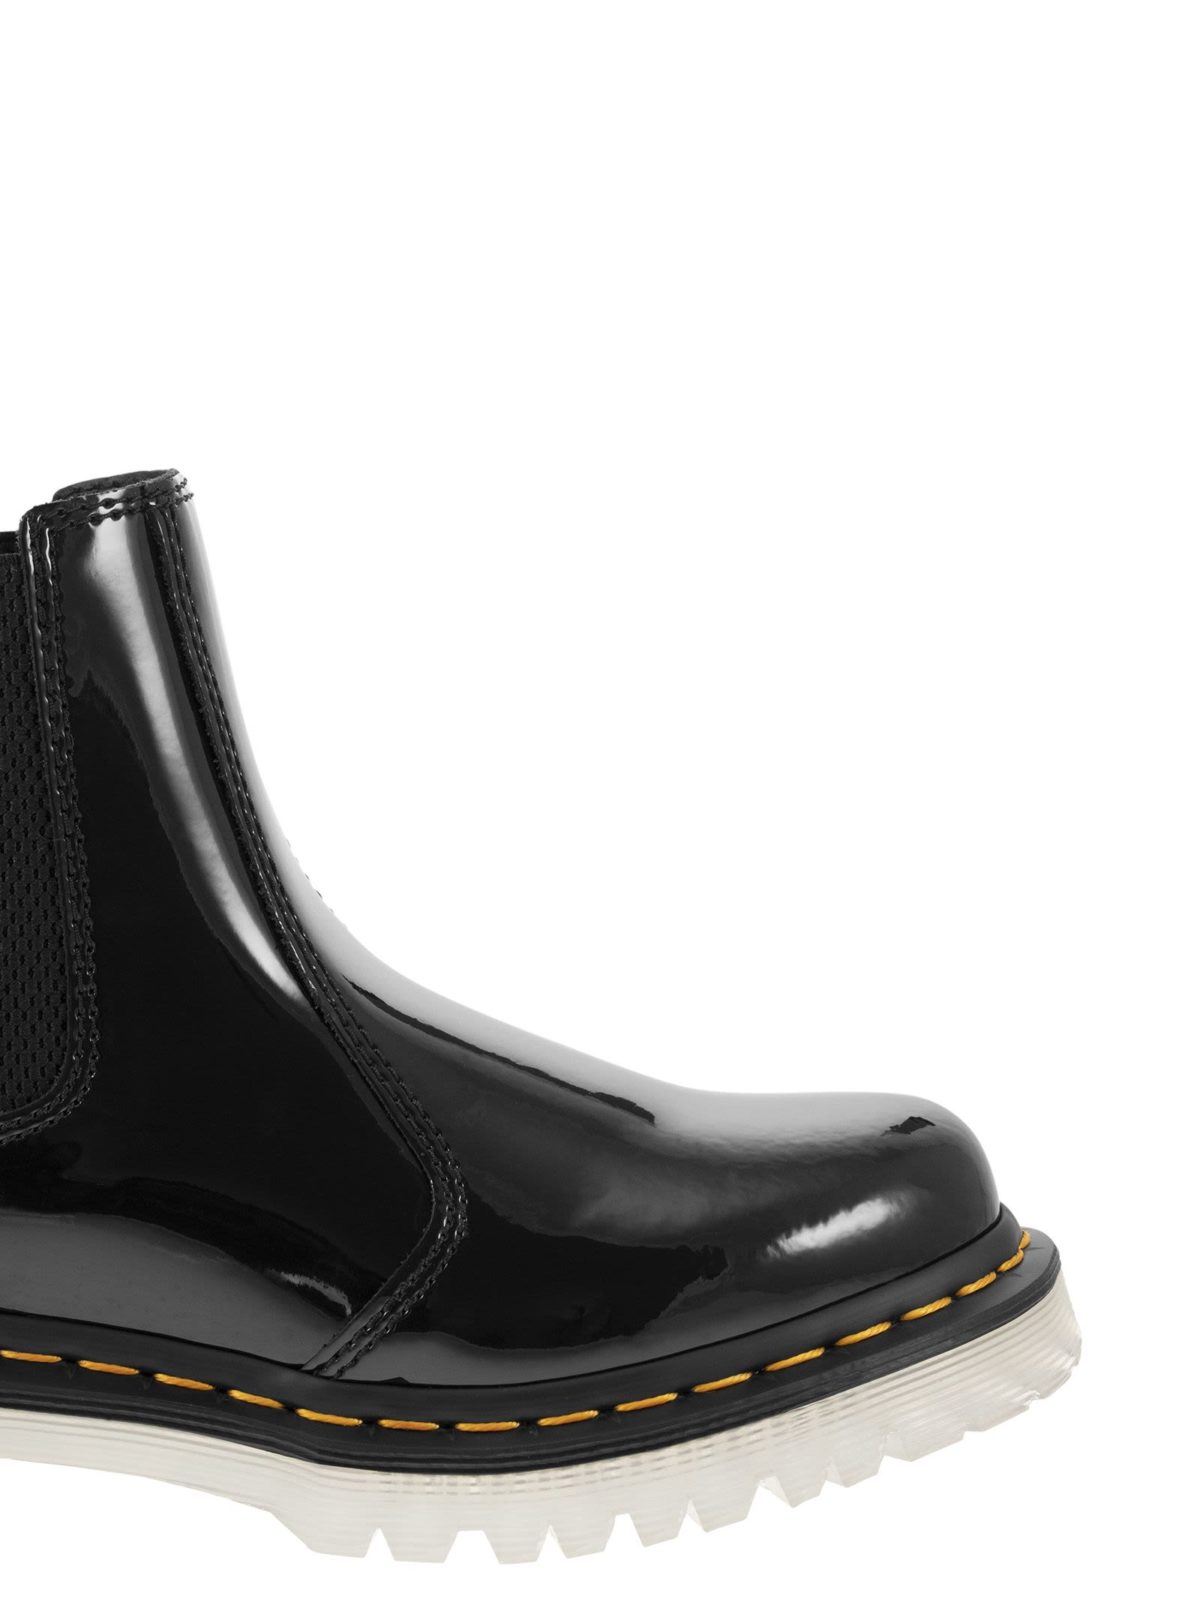 DR MARTENS: 2976 Patent Chelsea Boots